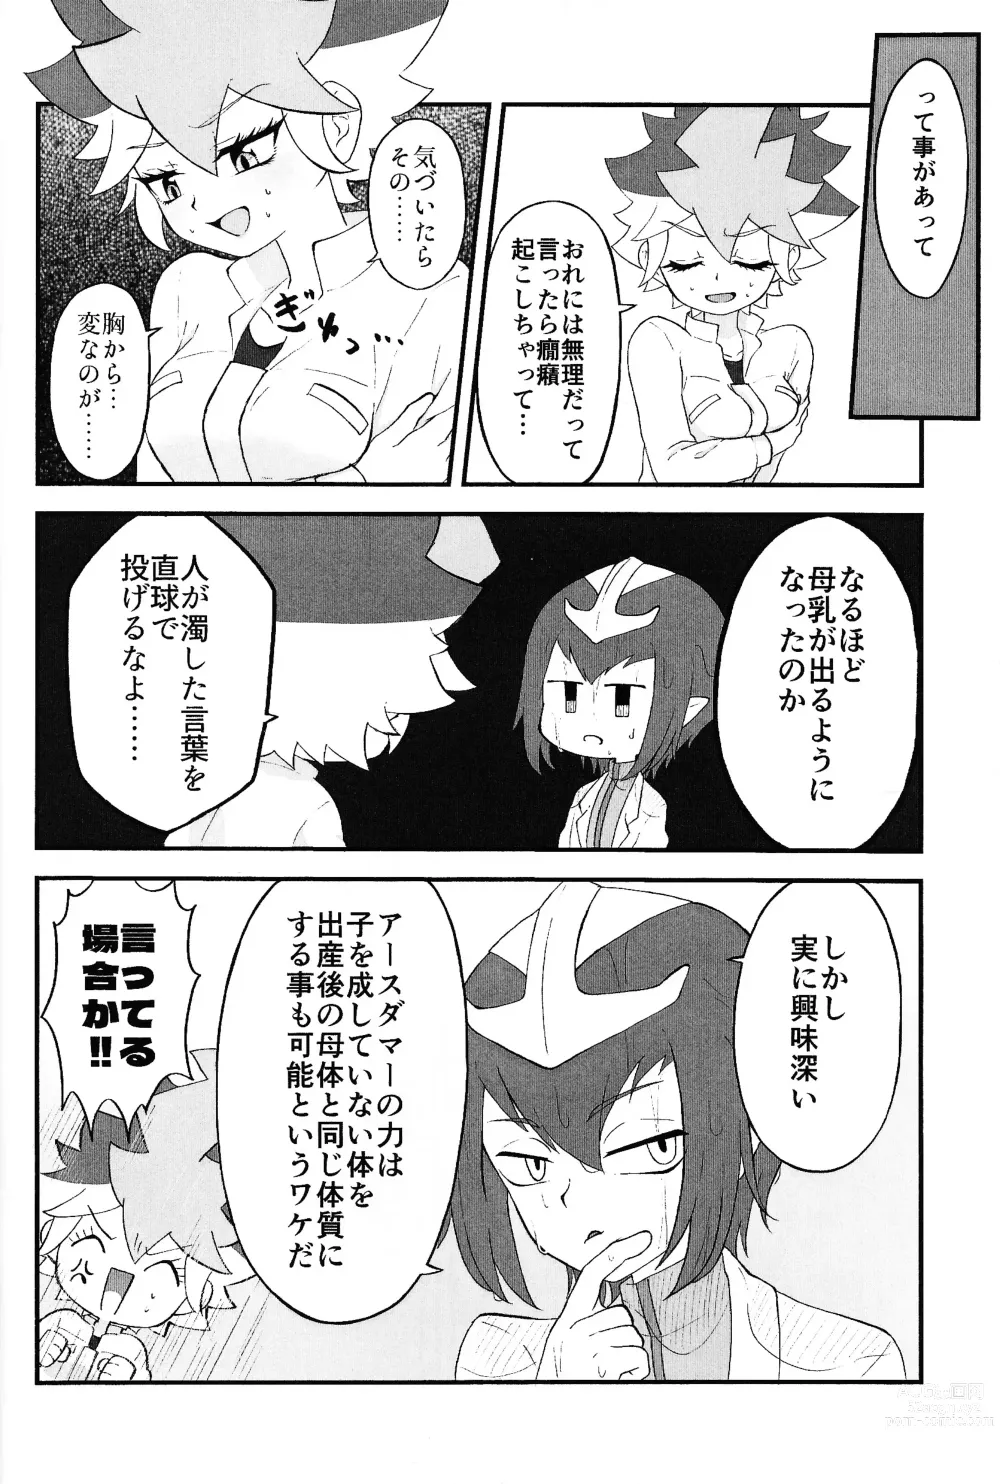 Page 5 of doujinshi Pandoranohako ka kindan no kajitsu ka